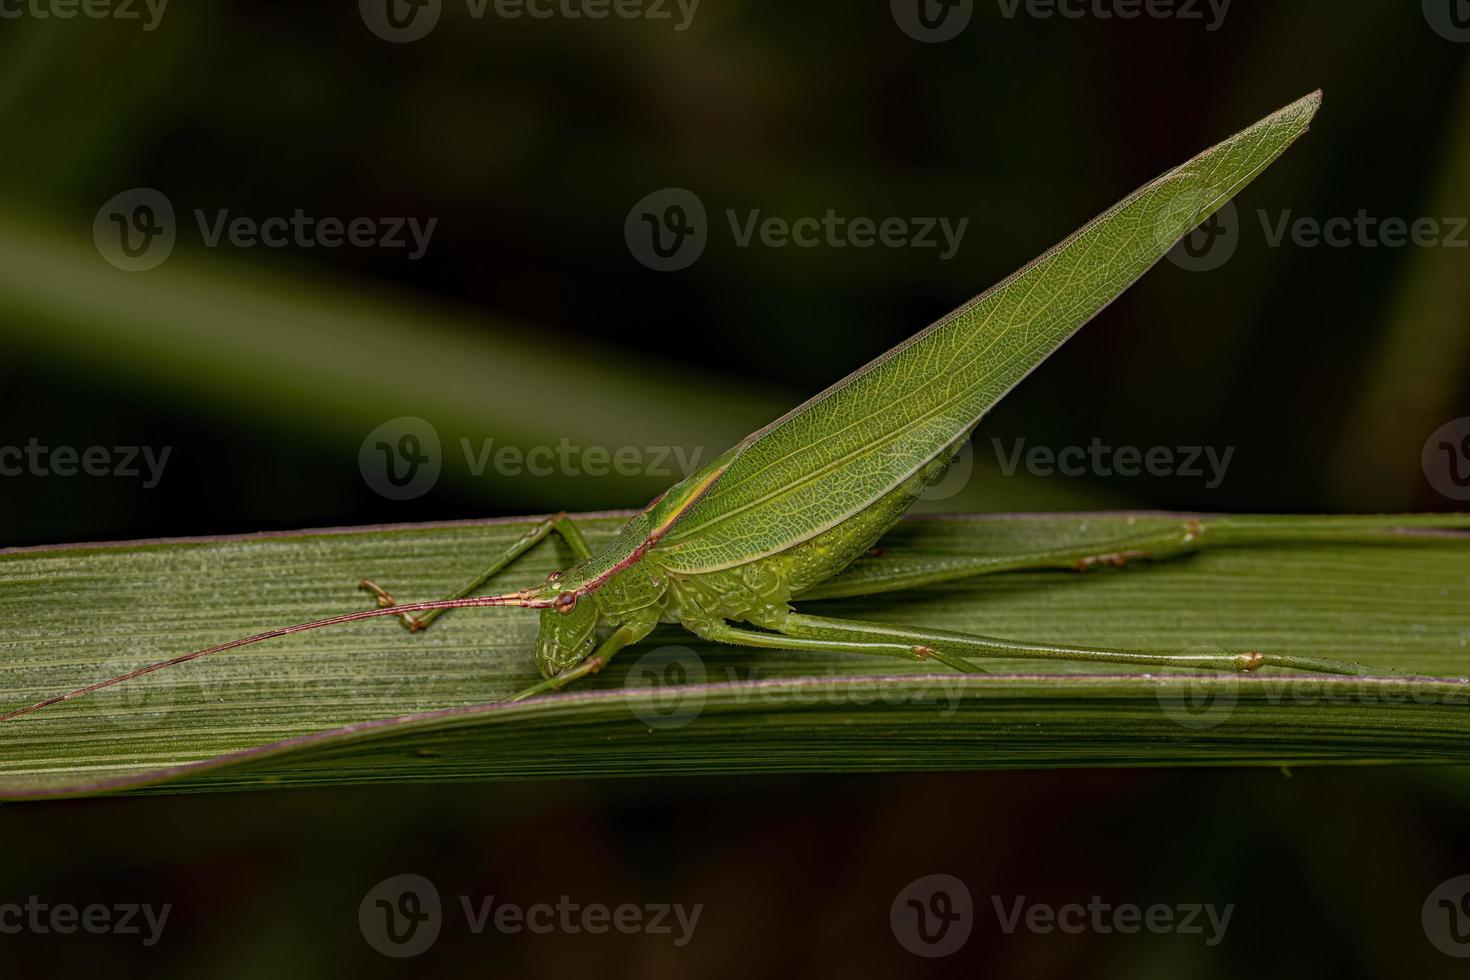 erwachsenes phaneropterine katydid foto